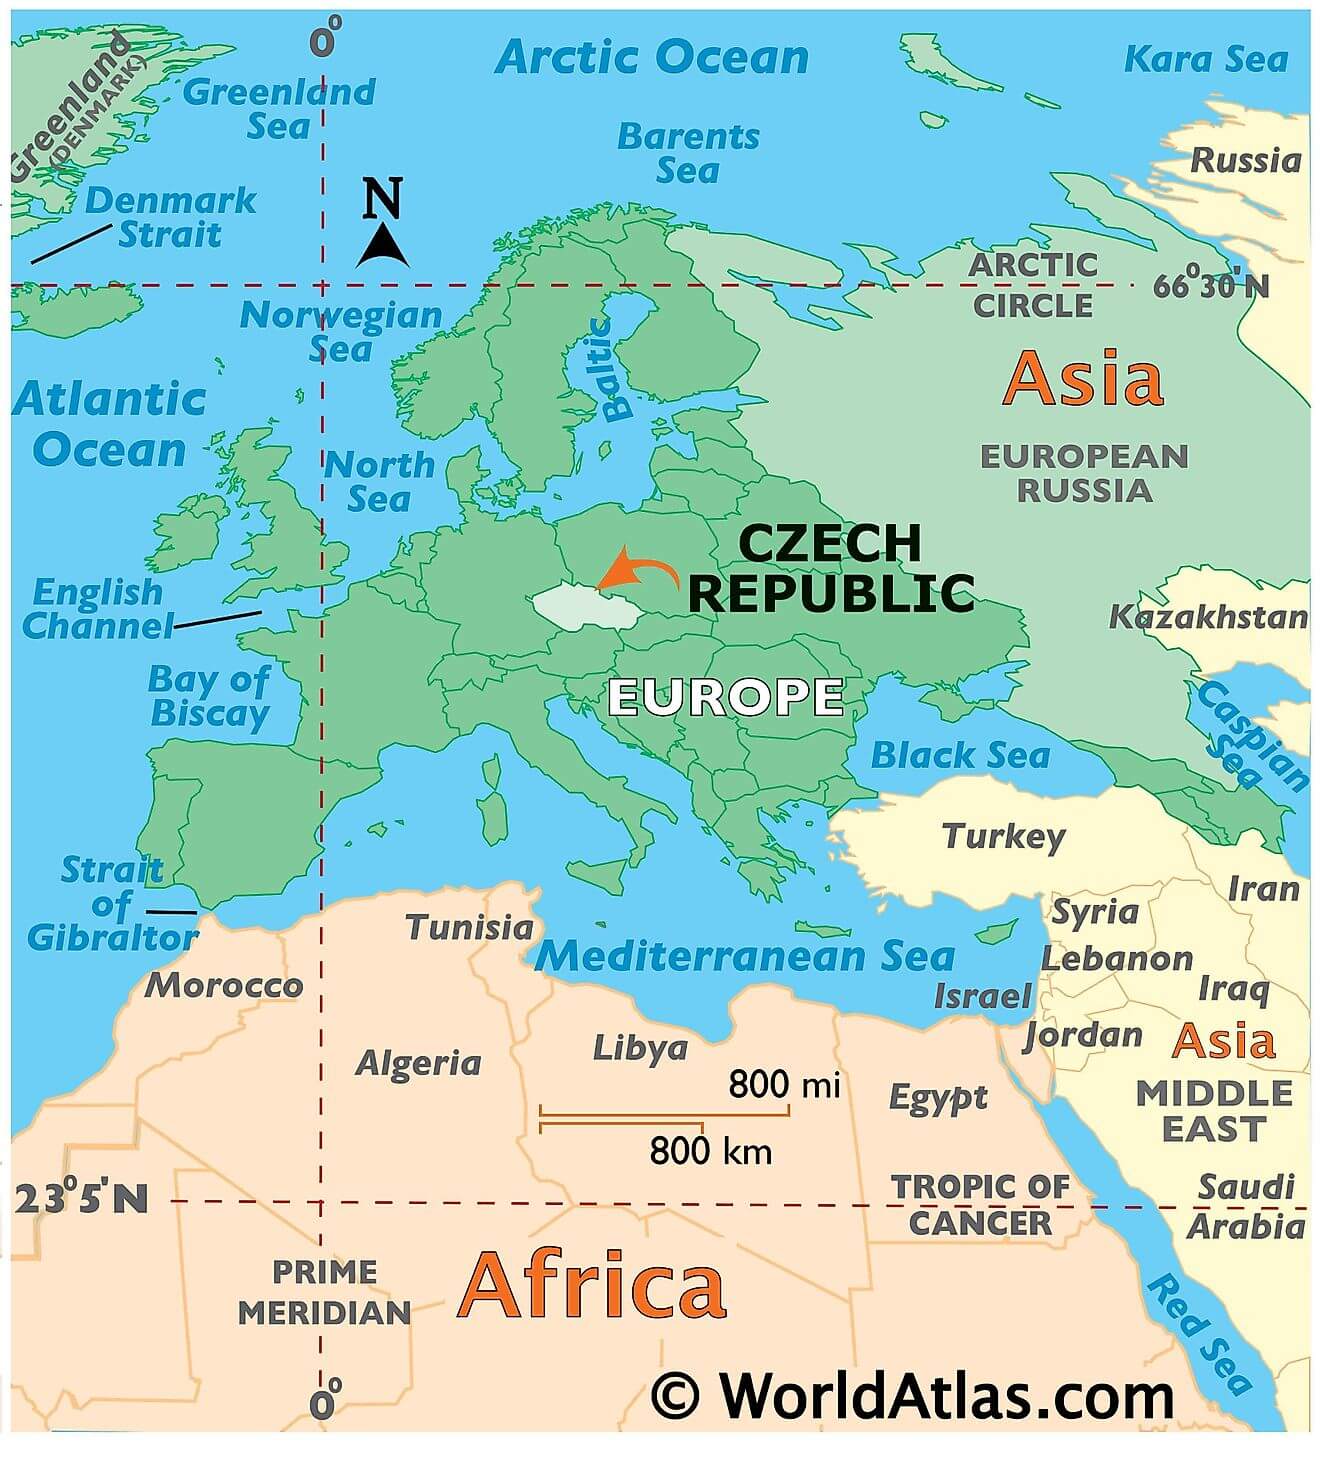 Cộng hòa Séc ở đâu?